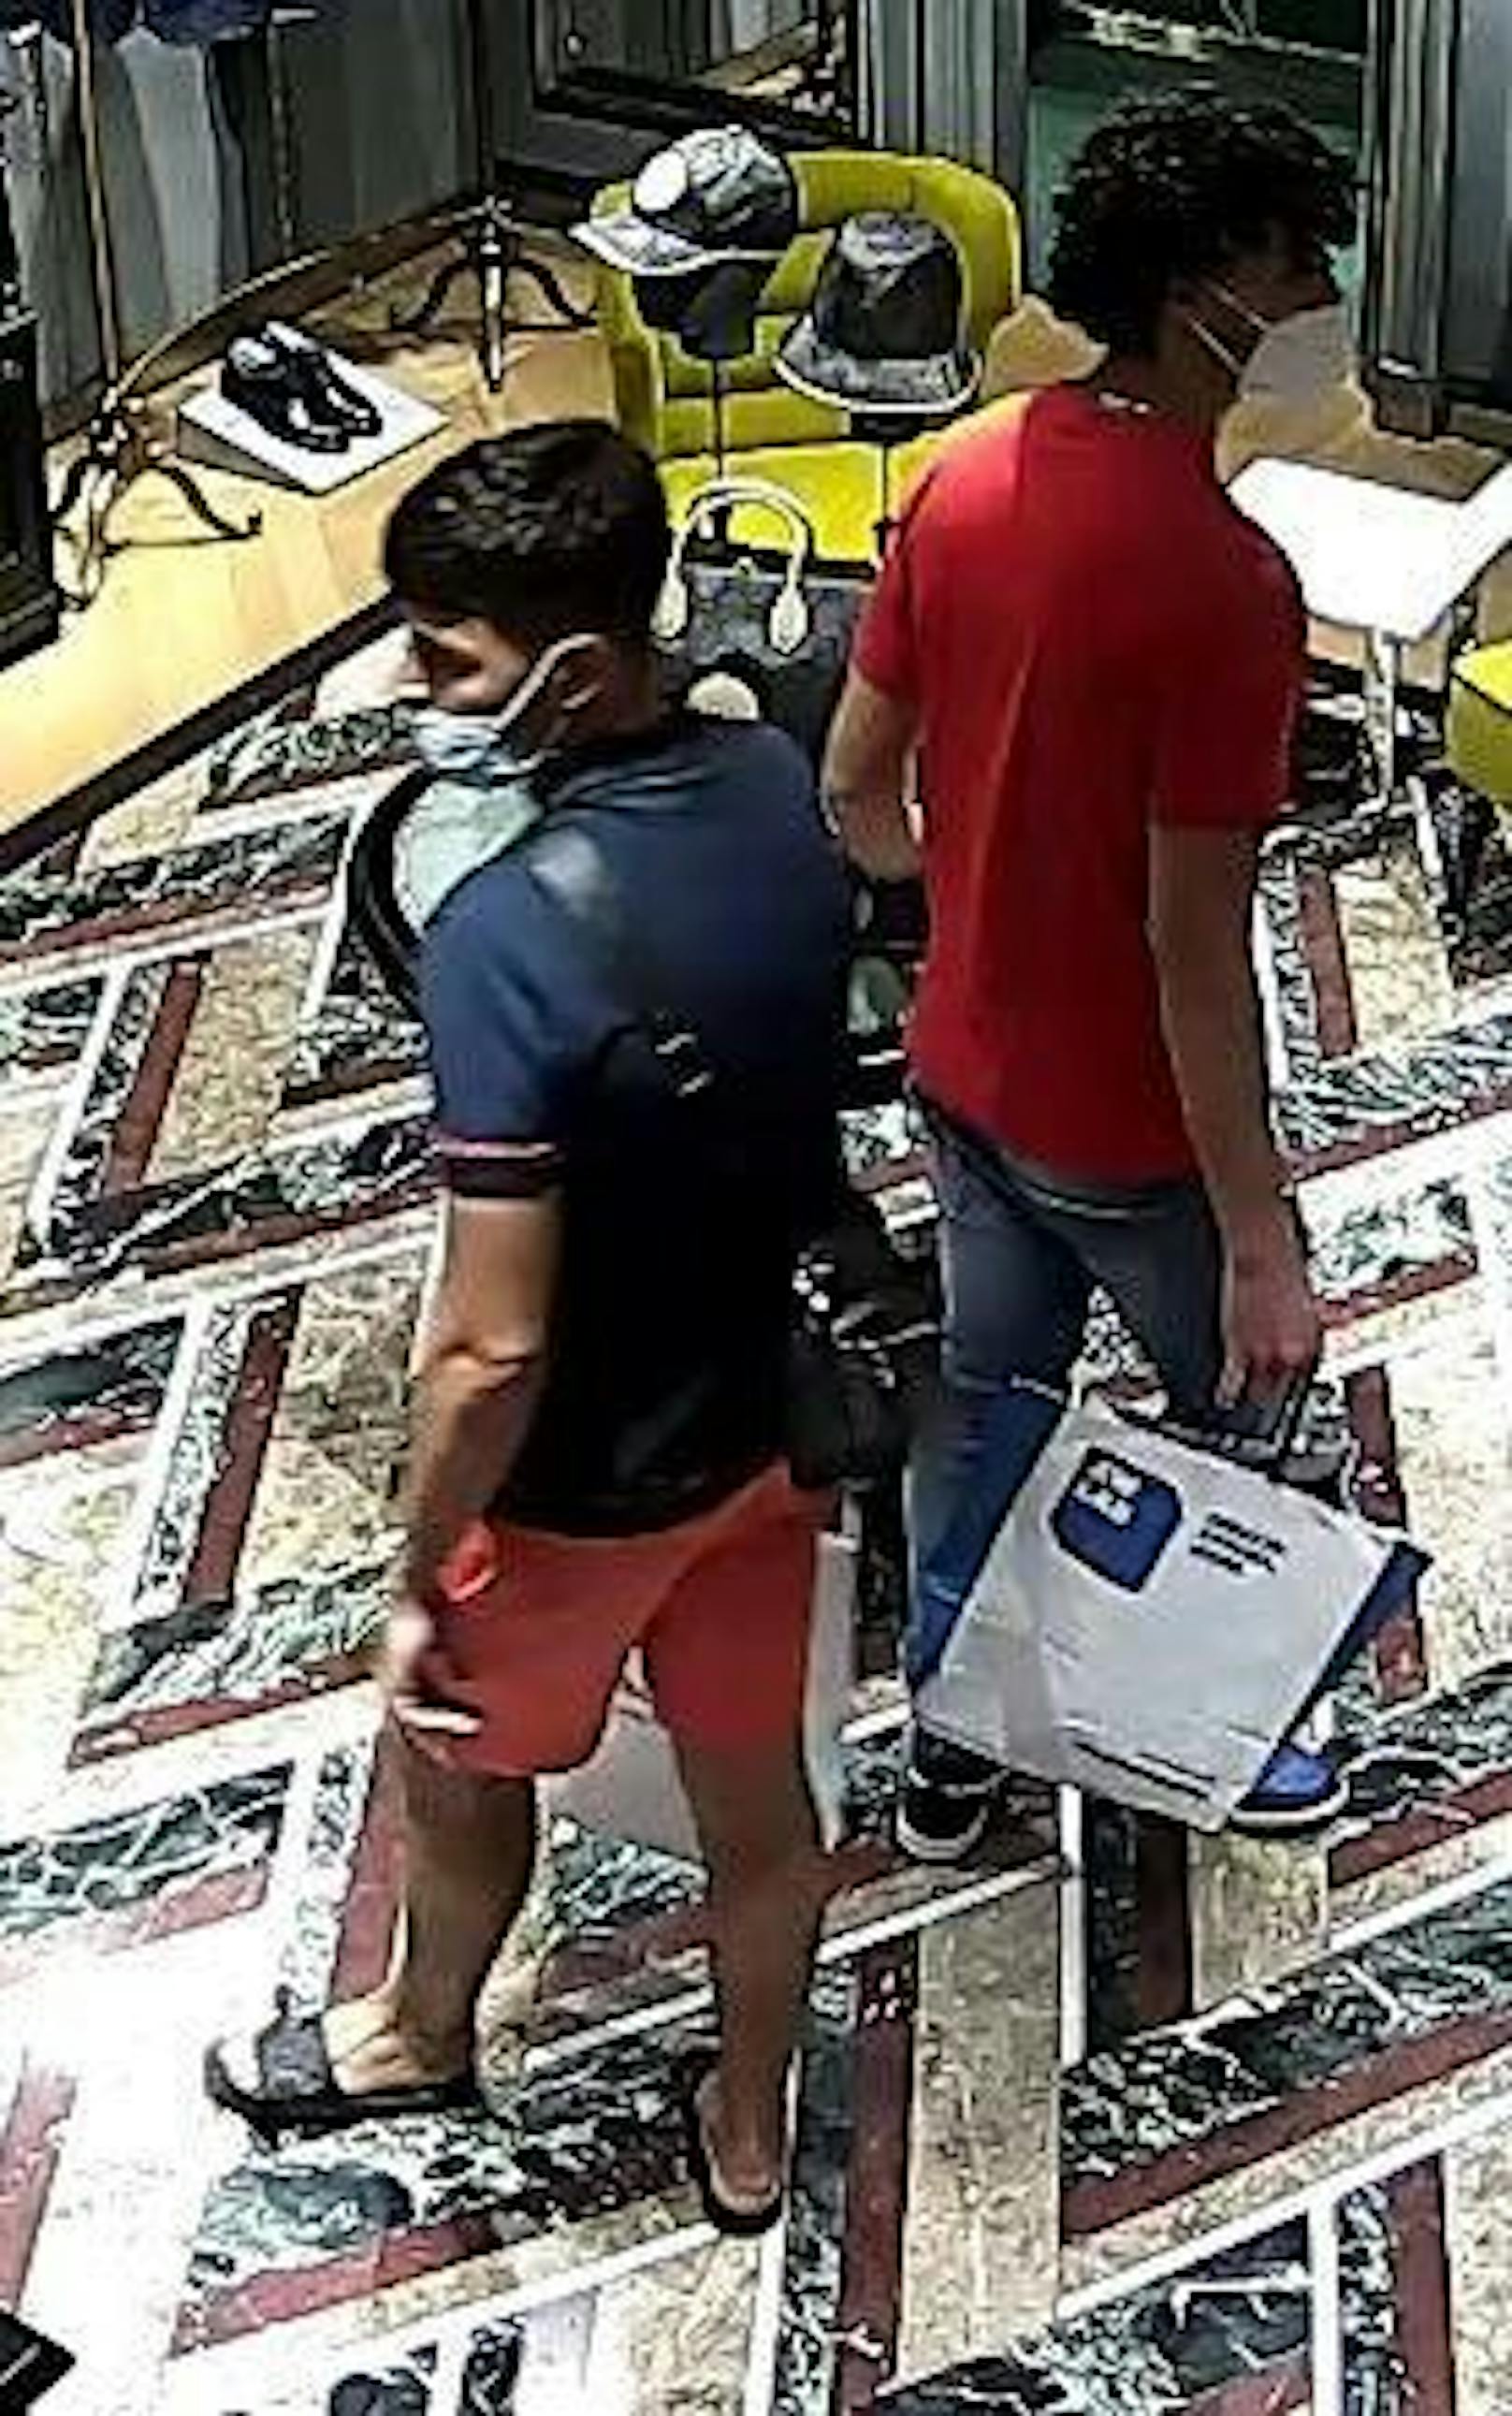 Die Wiener Polizei sucht nach diesen drei Männern. Sie sollen in Diebstähle in Luxus-Geschäften involviert sein. (22. August 2021)